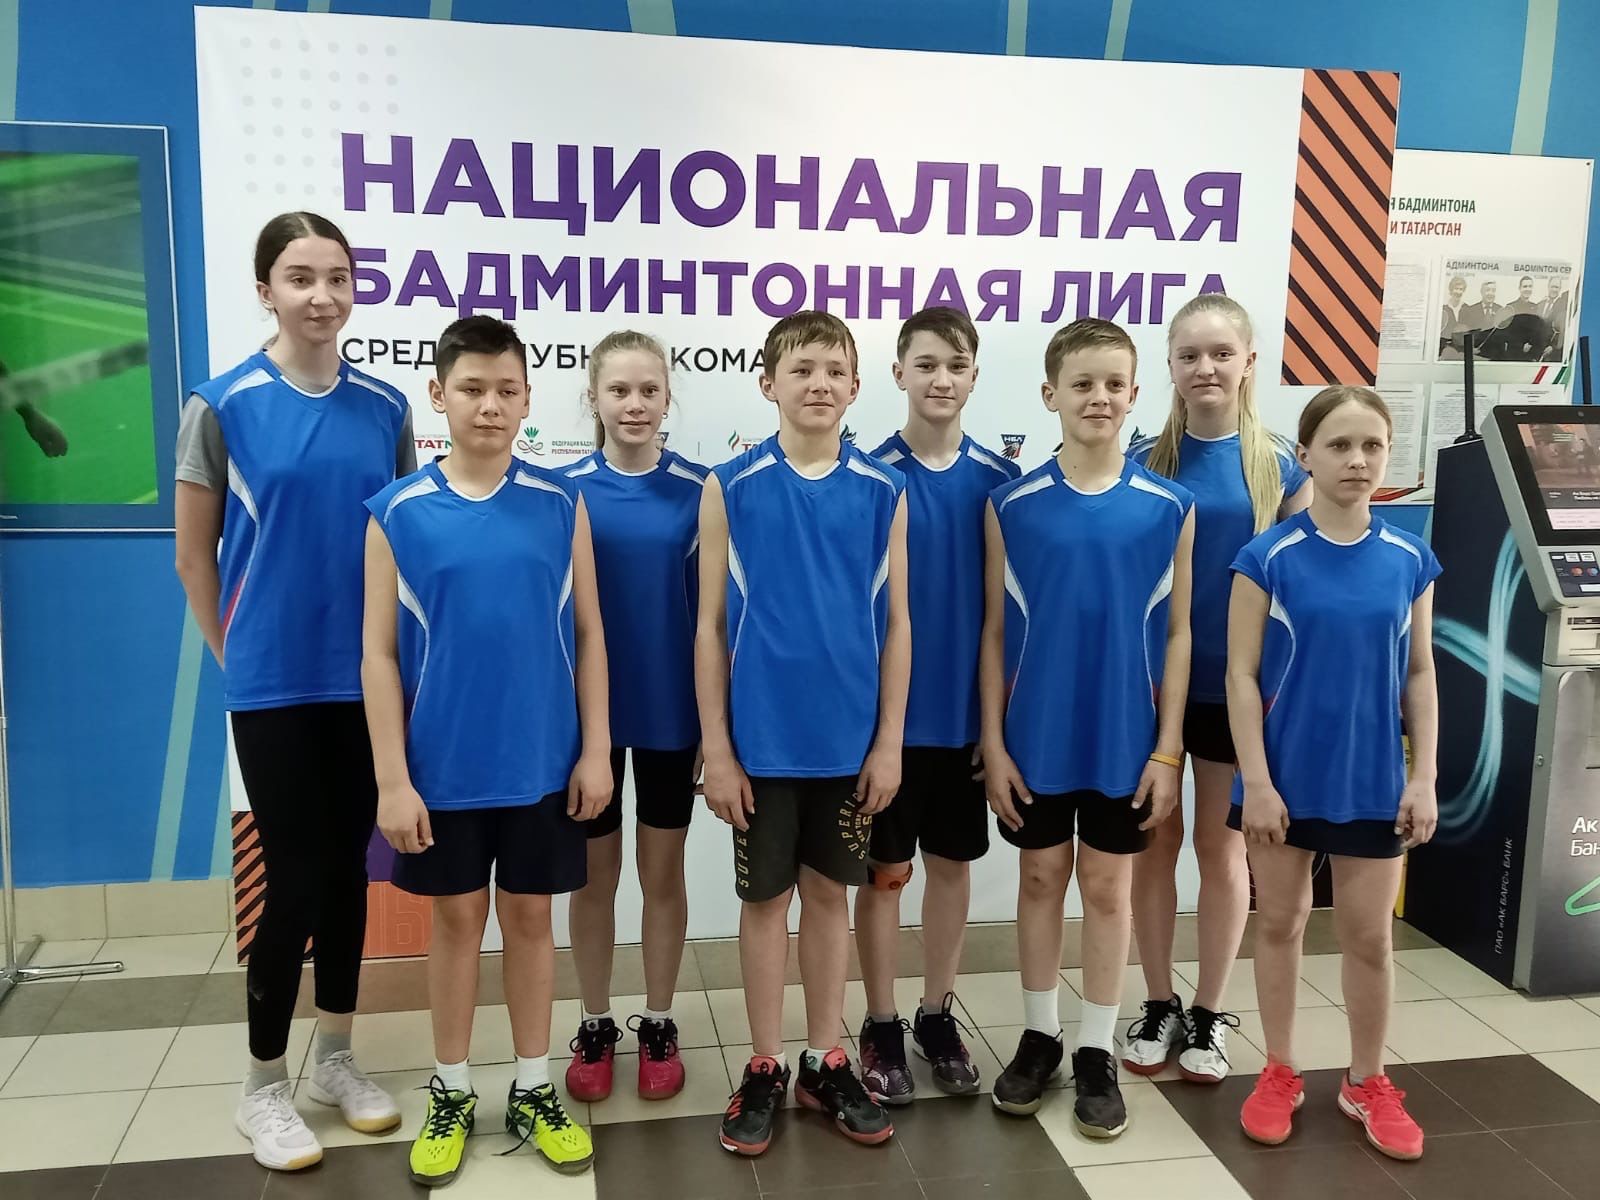 Чистопольские спортсмены  приняли участие в Национальной бадминтонной лиге среди клубных команд